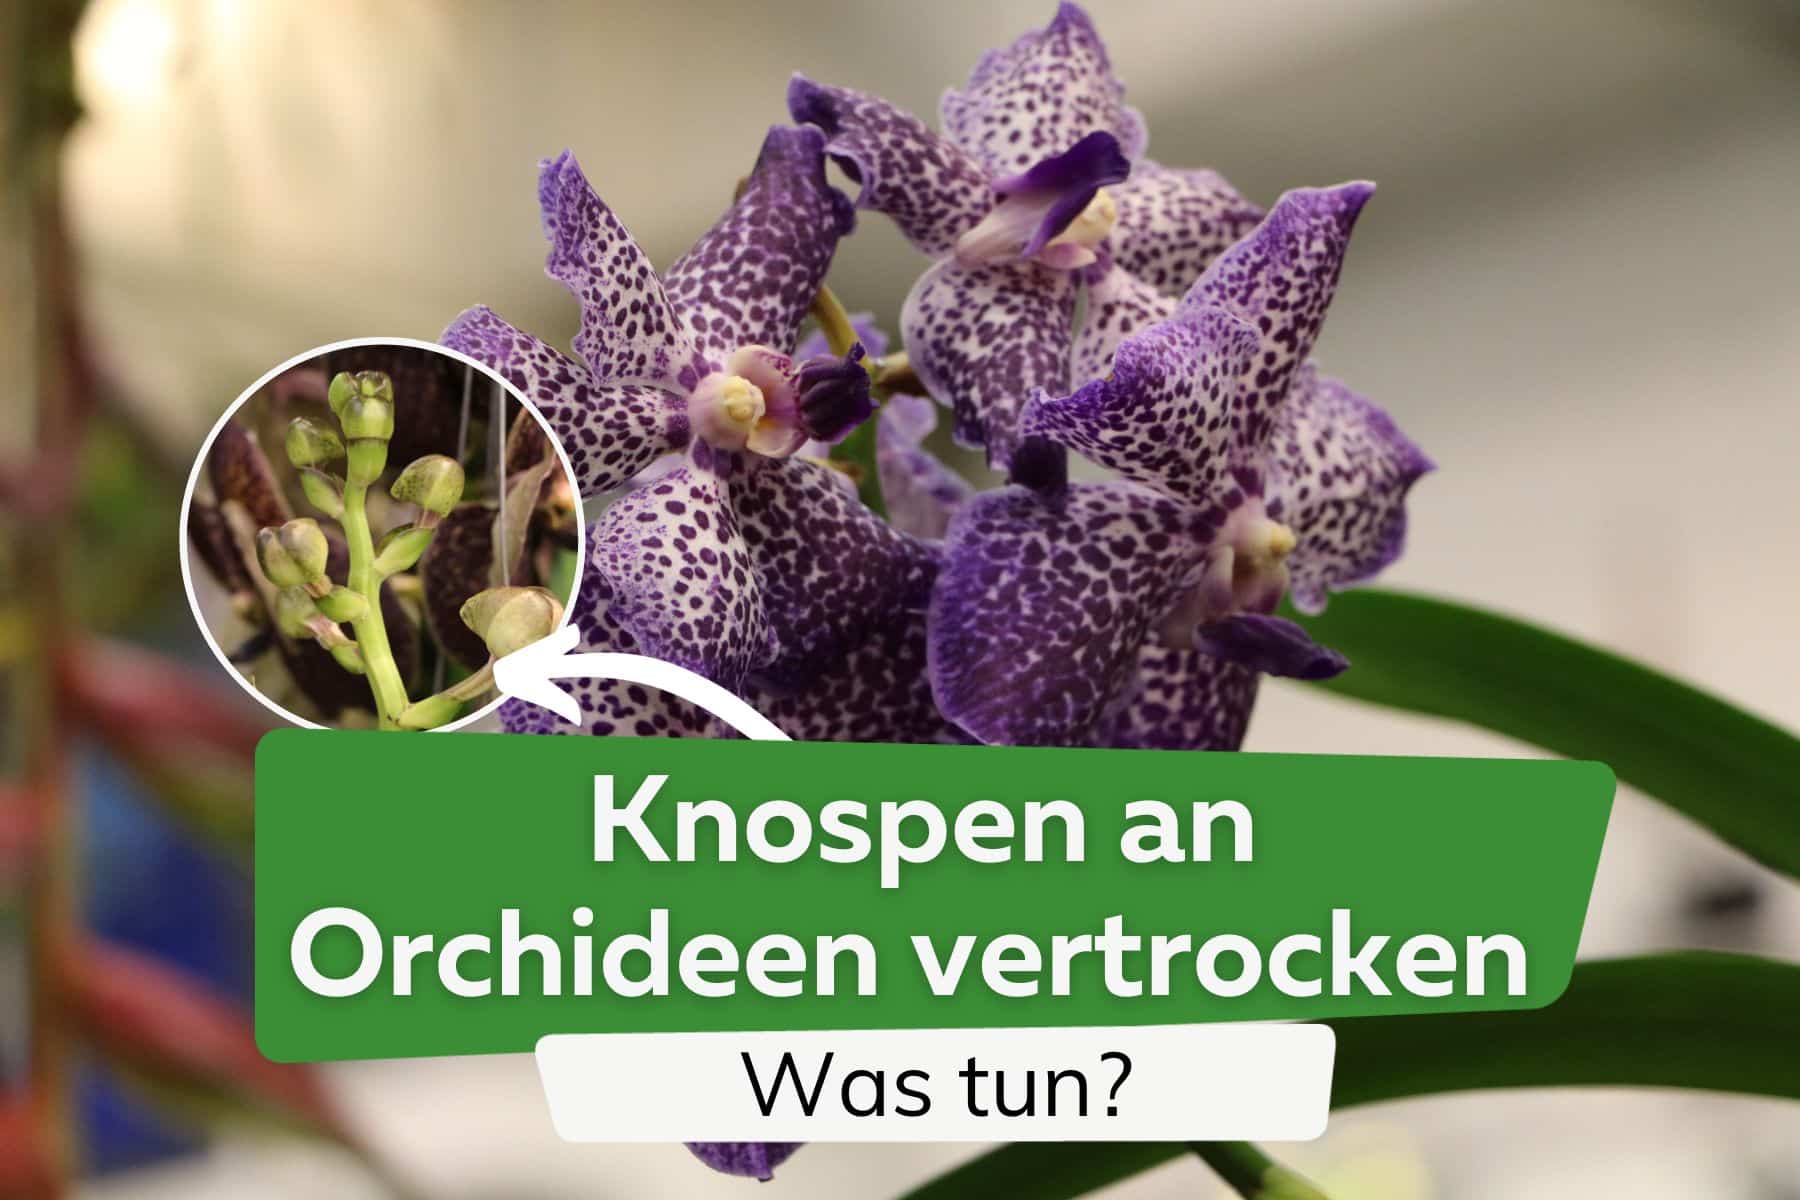 Knospen an Orchideen vertrocknen und fallen ab - was tun?